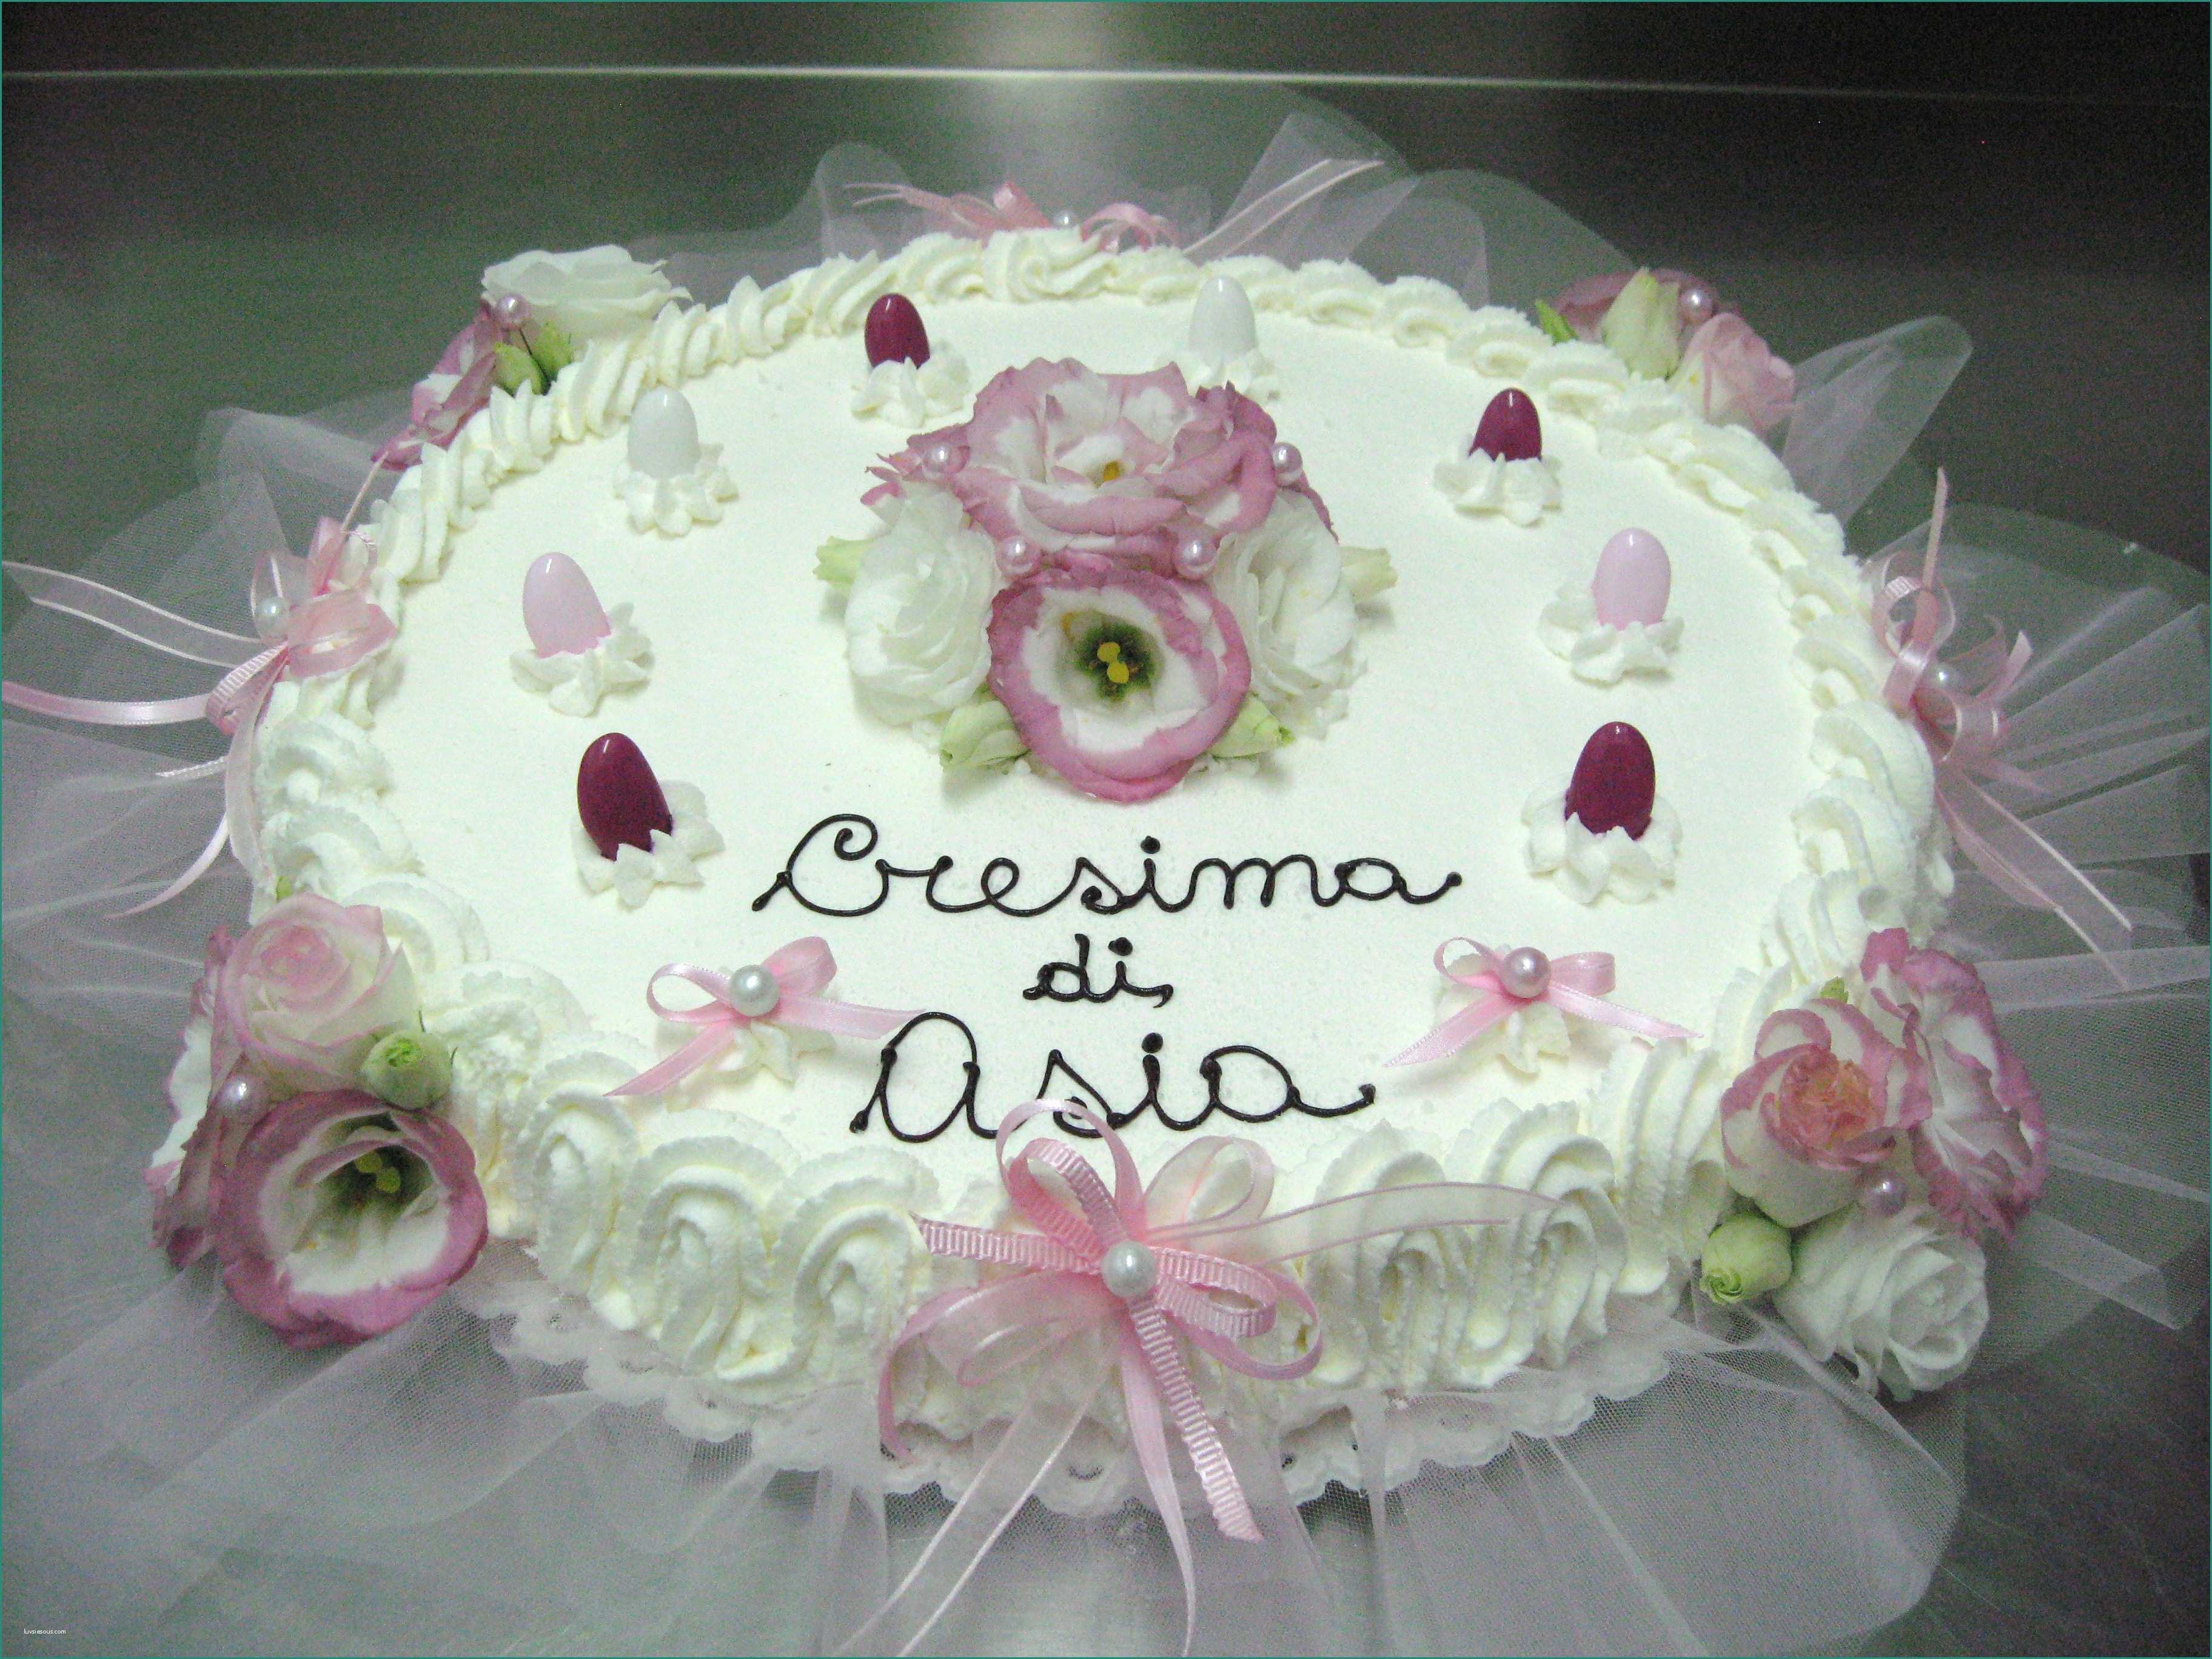 Immagini Per La Cresima E torte Per Cresime Foto Images